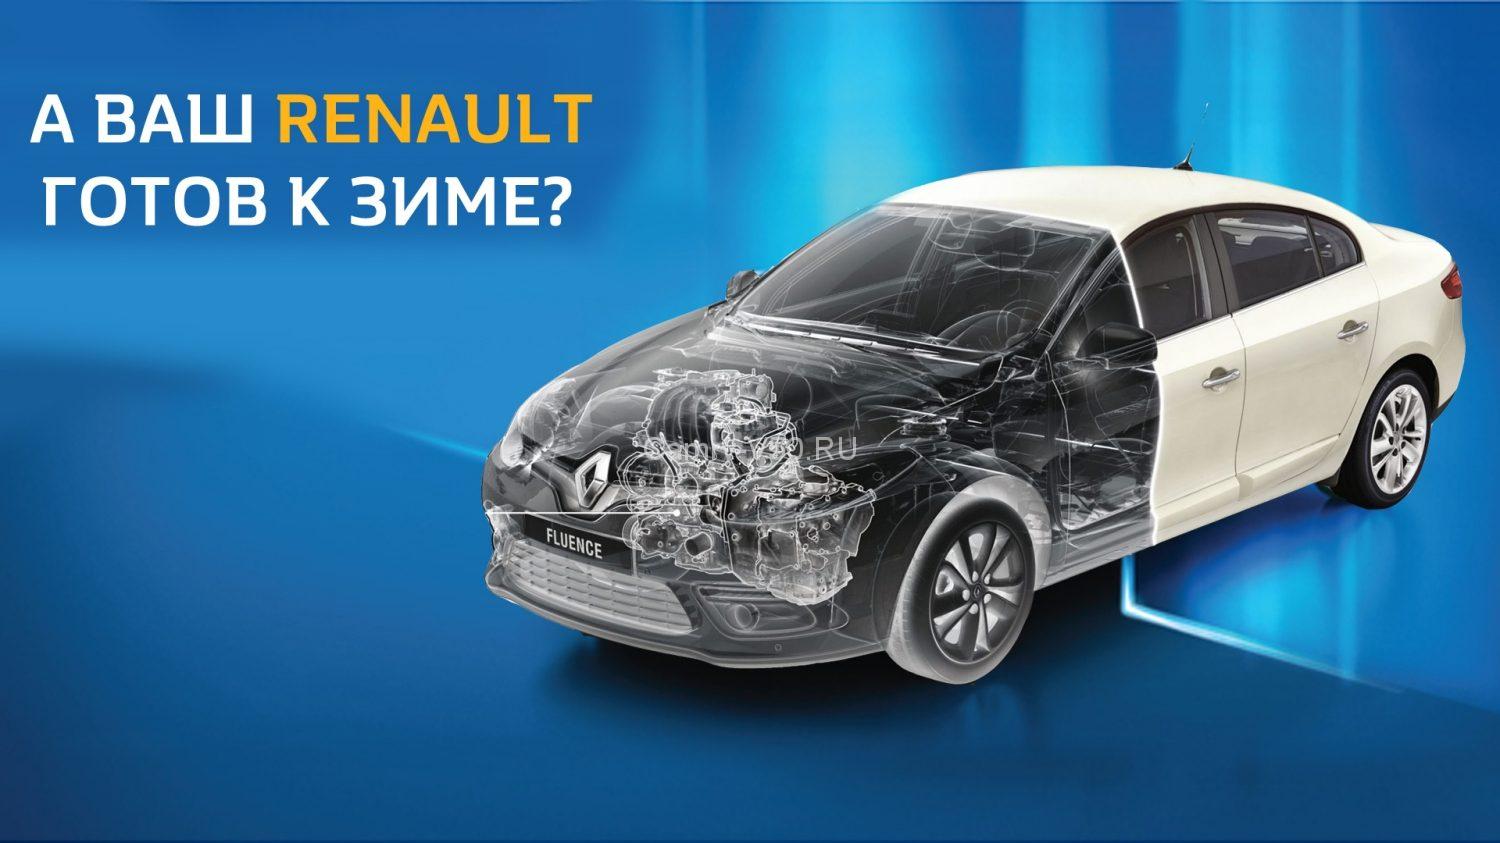 Renault обслуживание